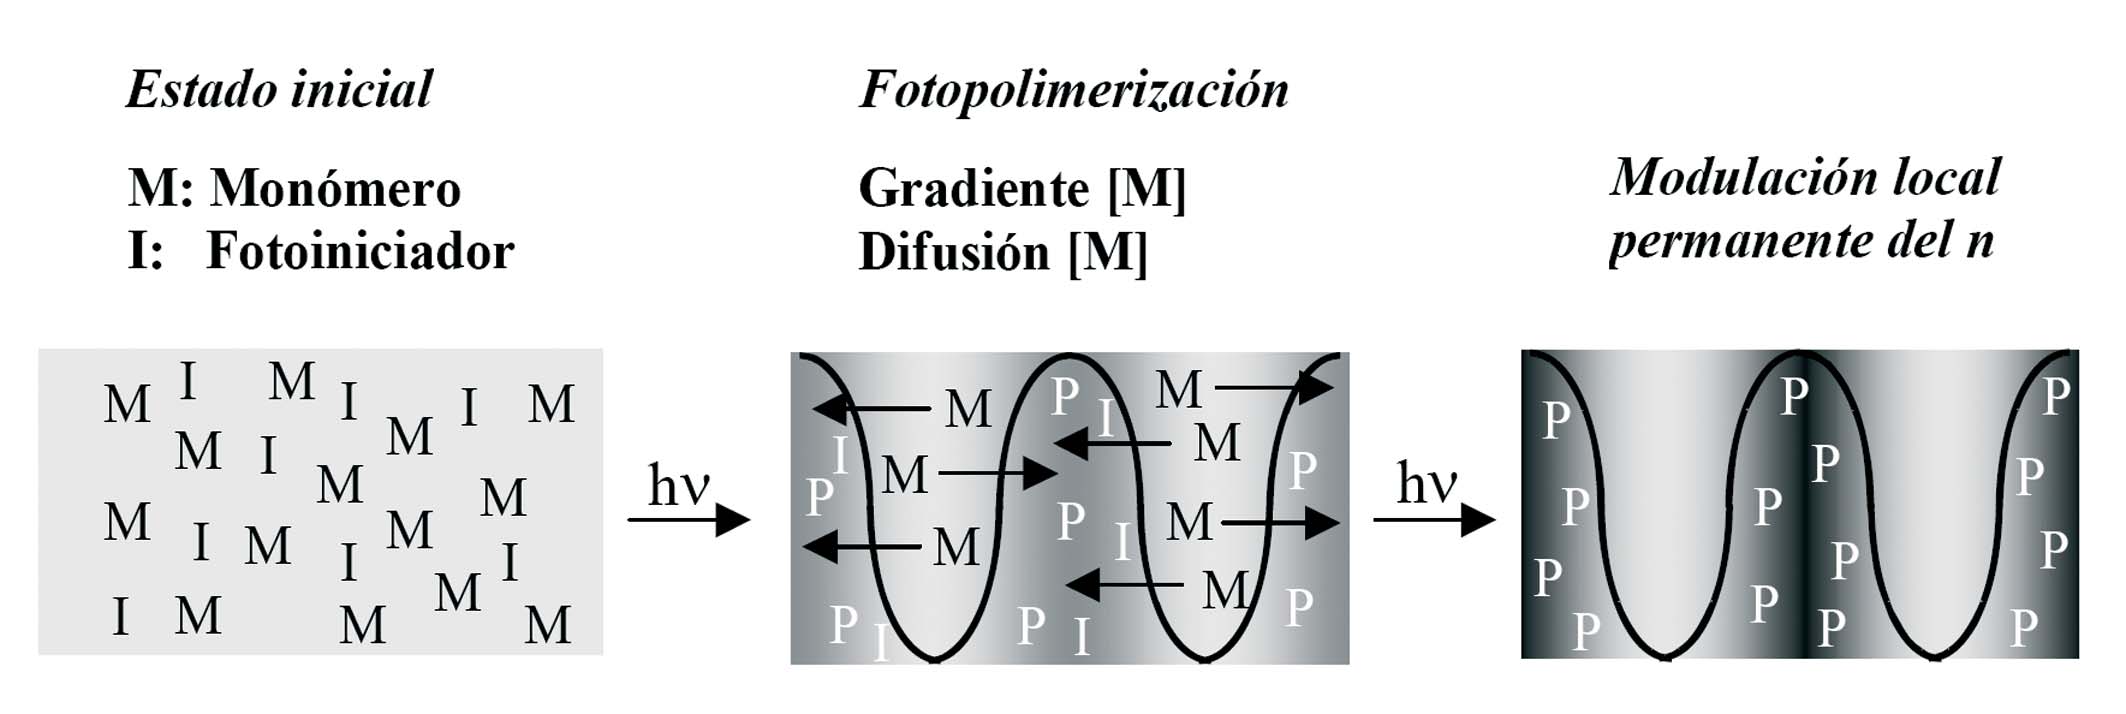 Gonzalo Ramos Zapata Figura I.7. Representación esquemática del mecanismo de almacenamiento de información mediante fotopolimerización propuesto por W. S. Colburn y K. A. Haines.[I.